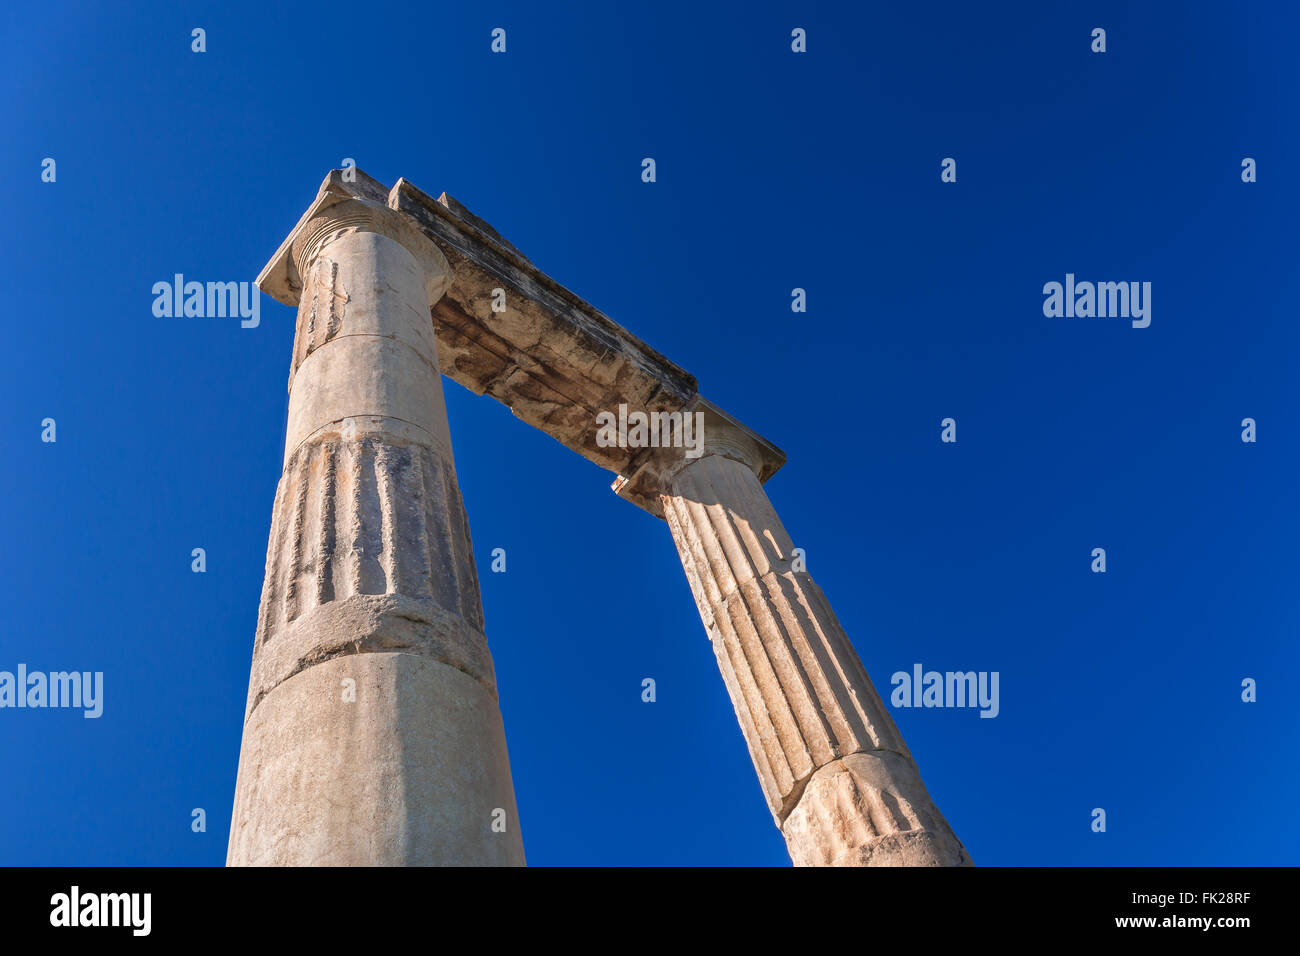 La antigua Grecia, la isla de Kos, la antigua Agora (mercado). Foto de stock